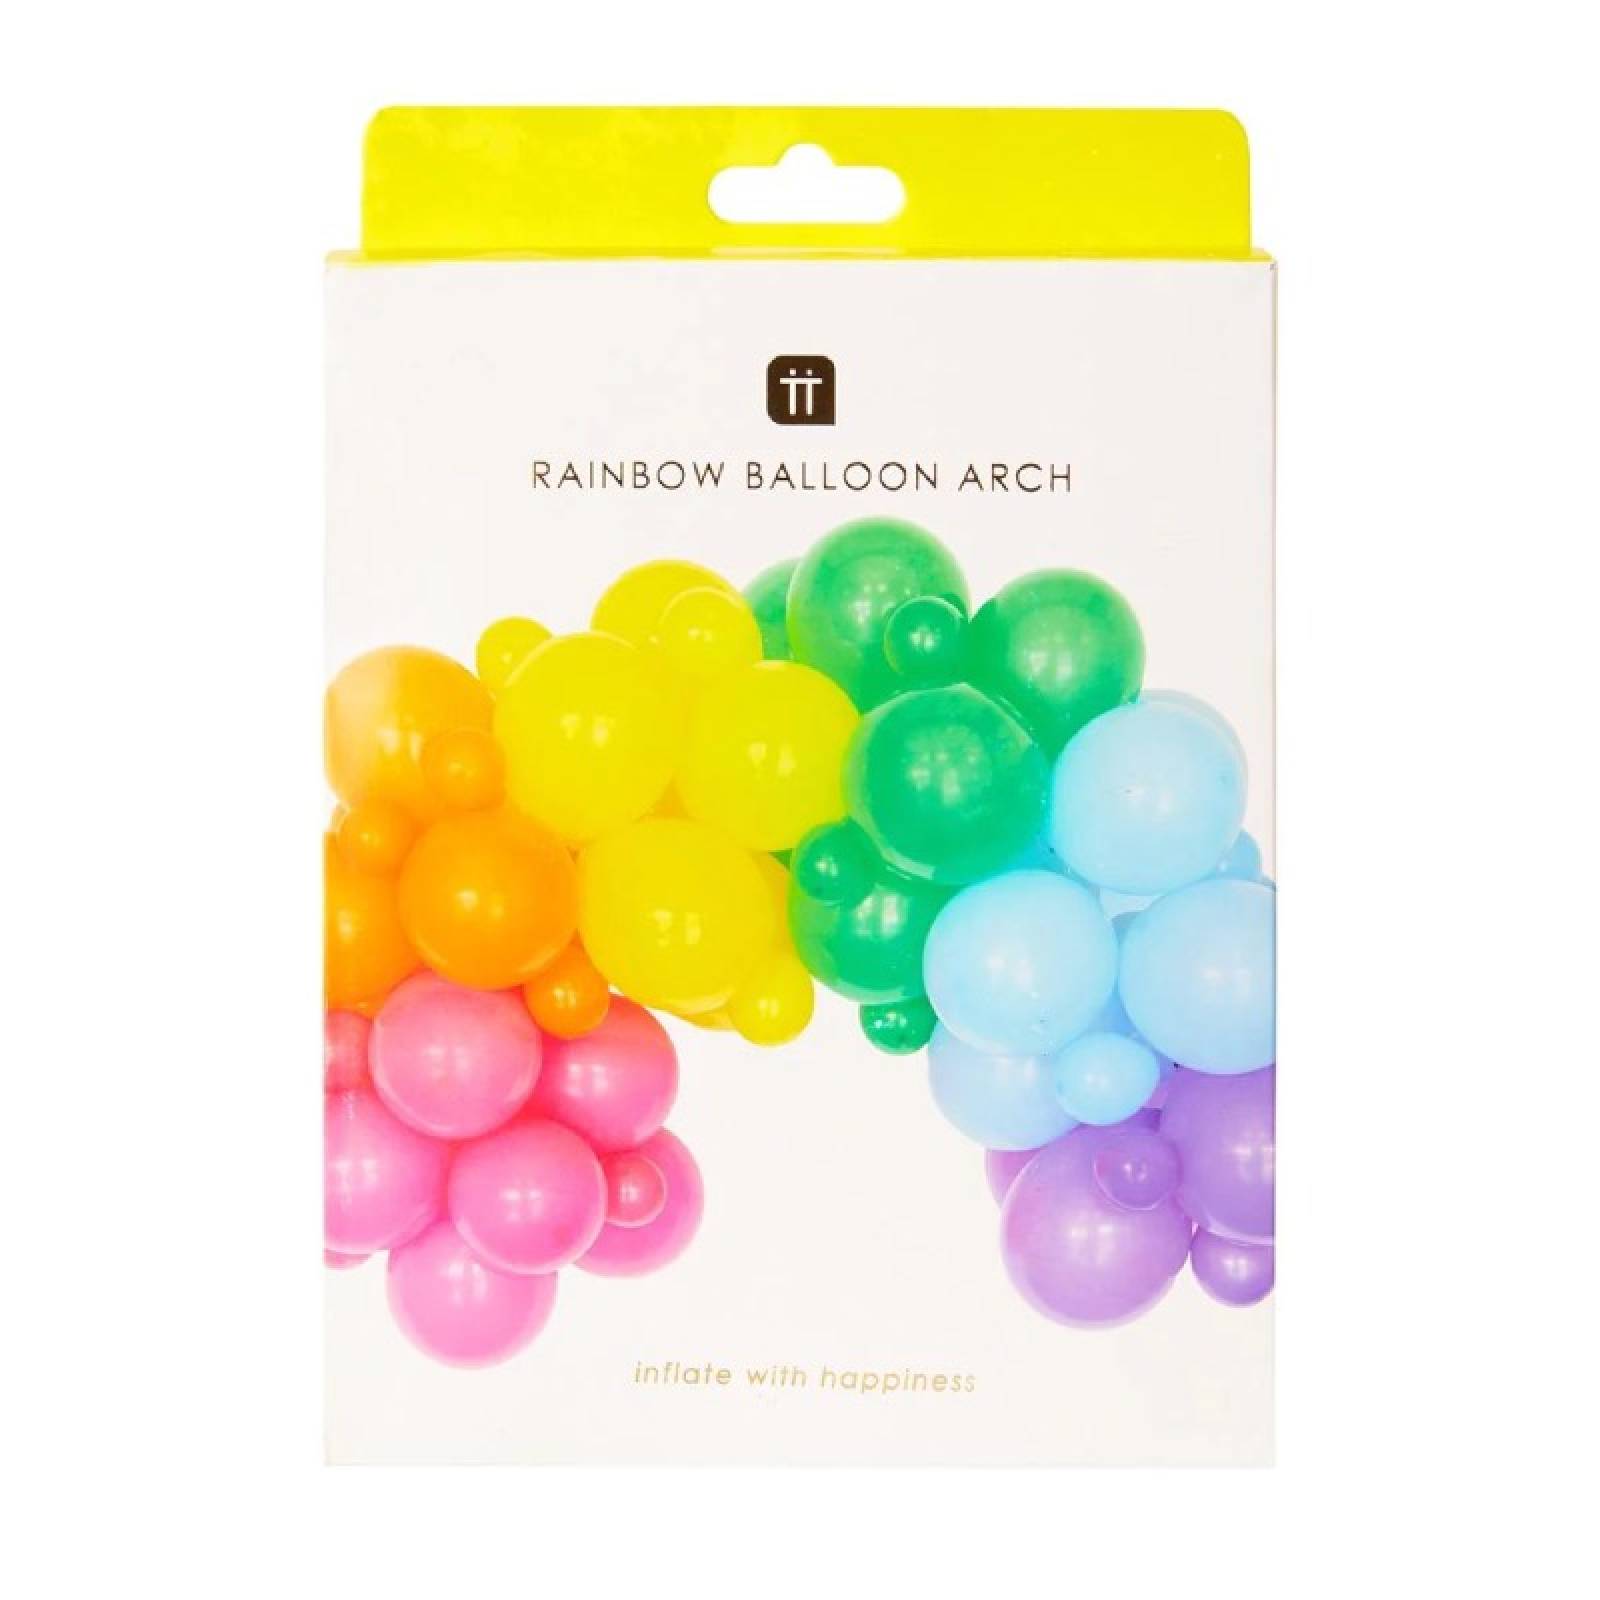 Rainbow Balloon Arch thumbnails